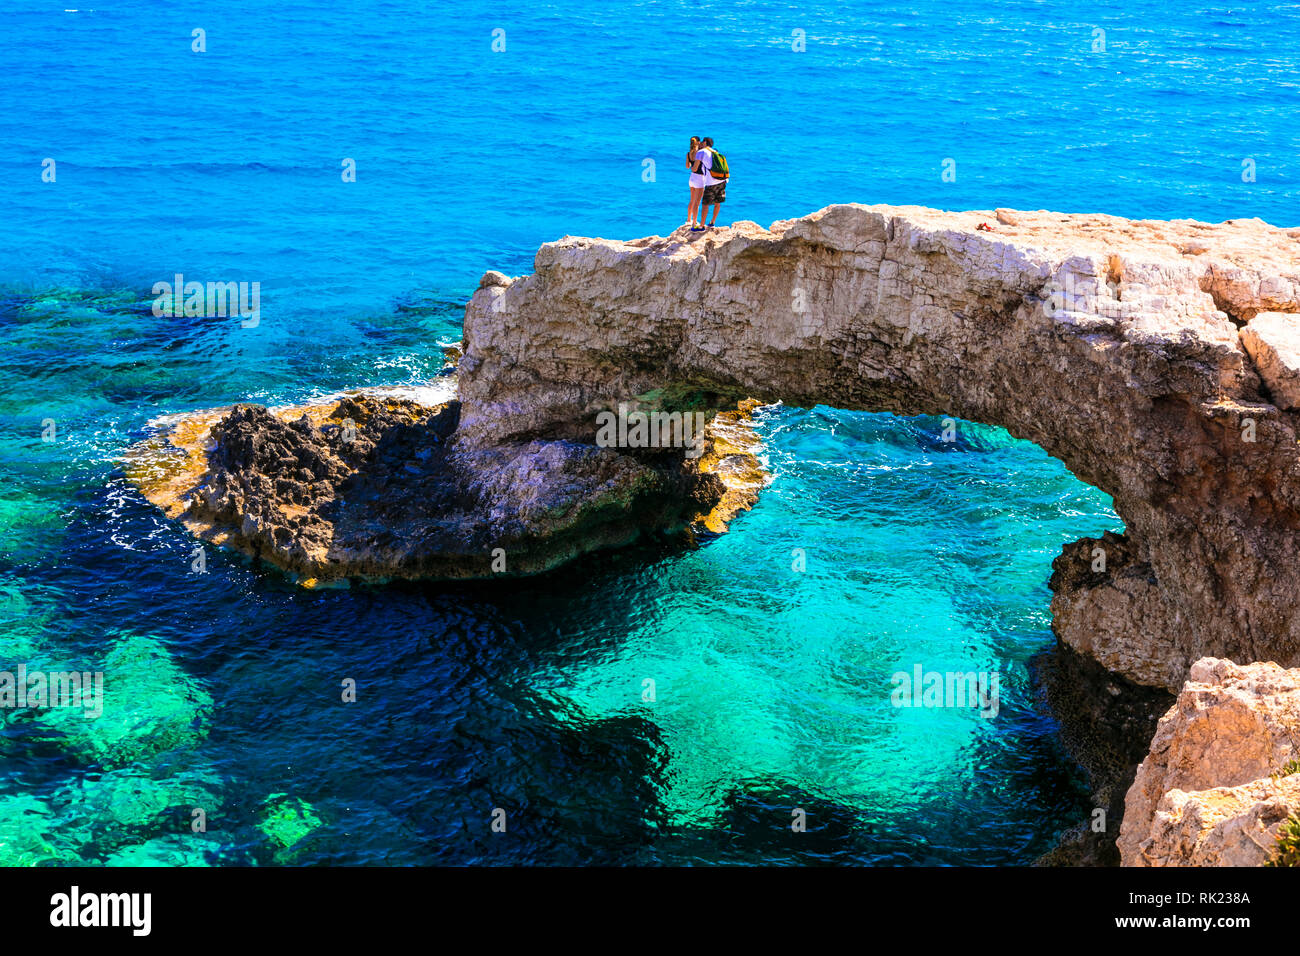 Impressive rocks and turquoise sea in Ayia Napa,Cyprus island. Stock Photo